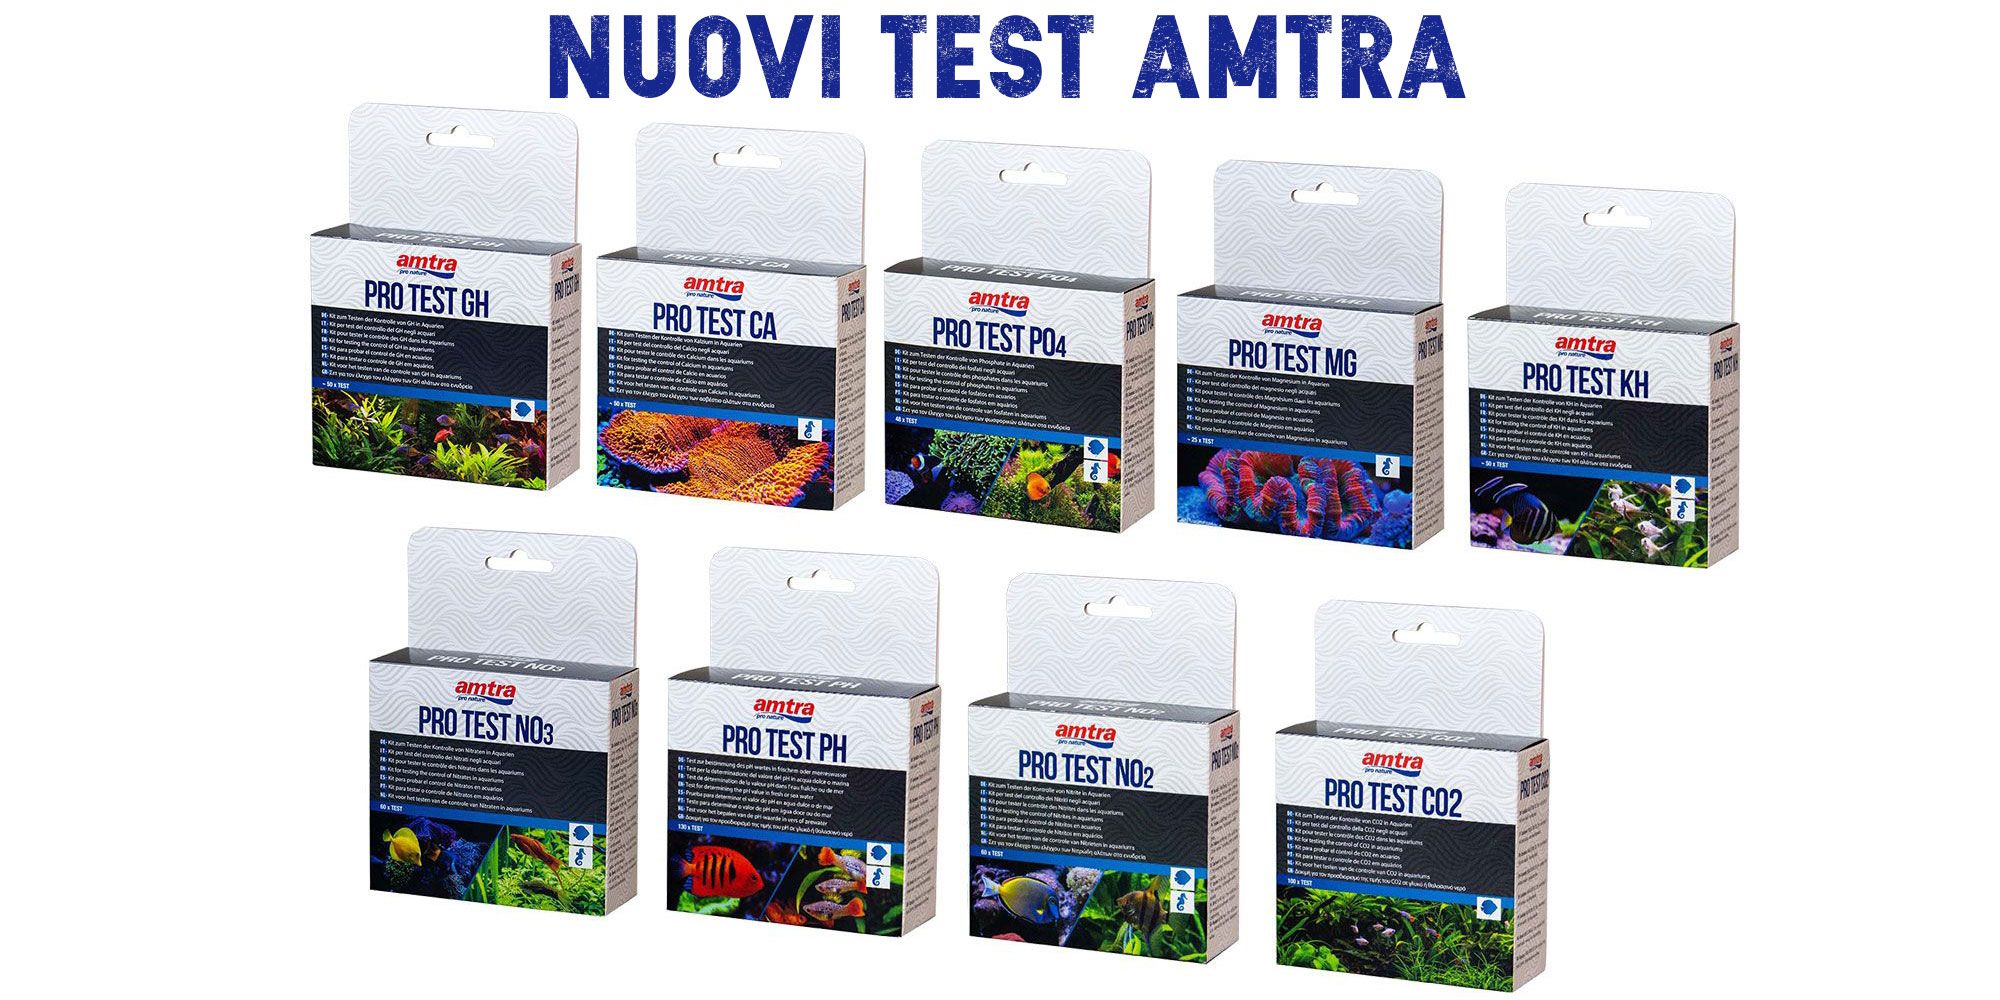 AMTRA PRO TEST PO4 - Amtra